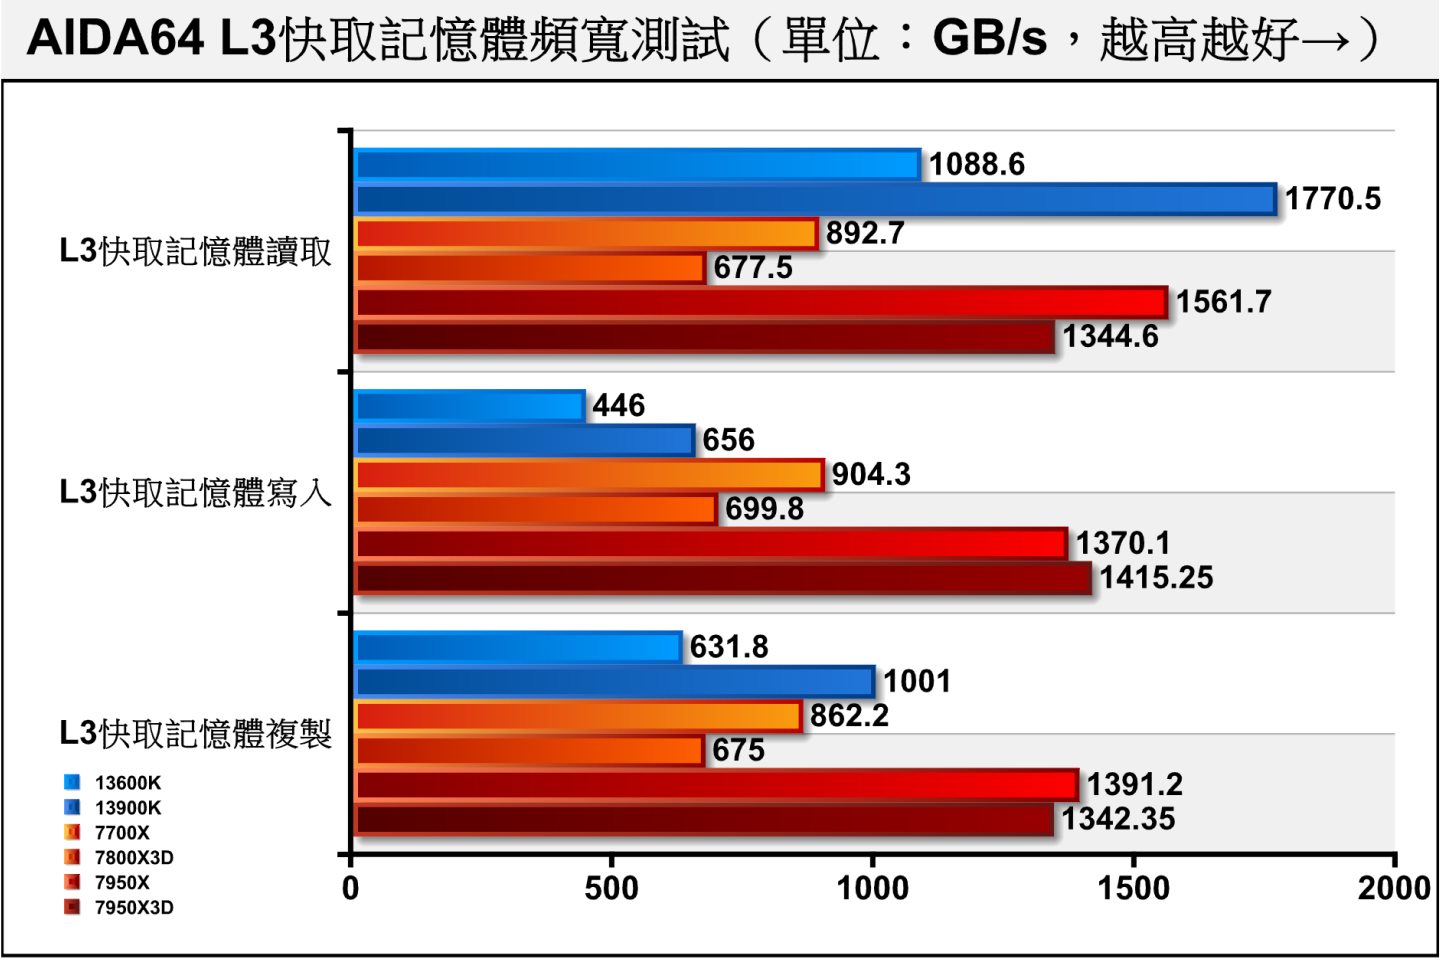 在重點的L3快取記憶體頻寬部分，載3D V-Cache的7800X3D、7950X3D表現分別比7700X、7950X低。